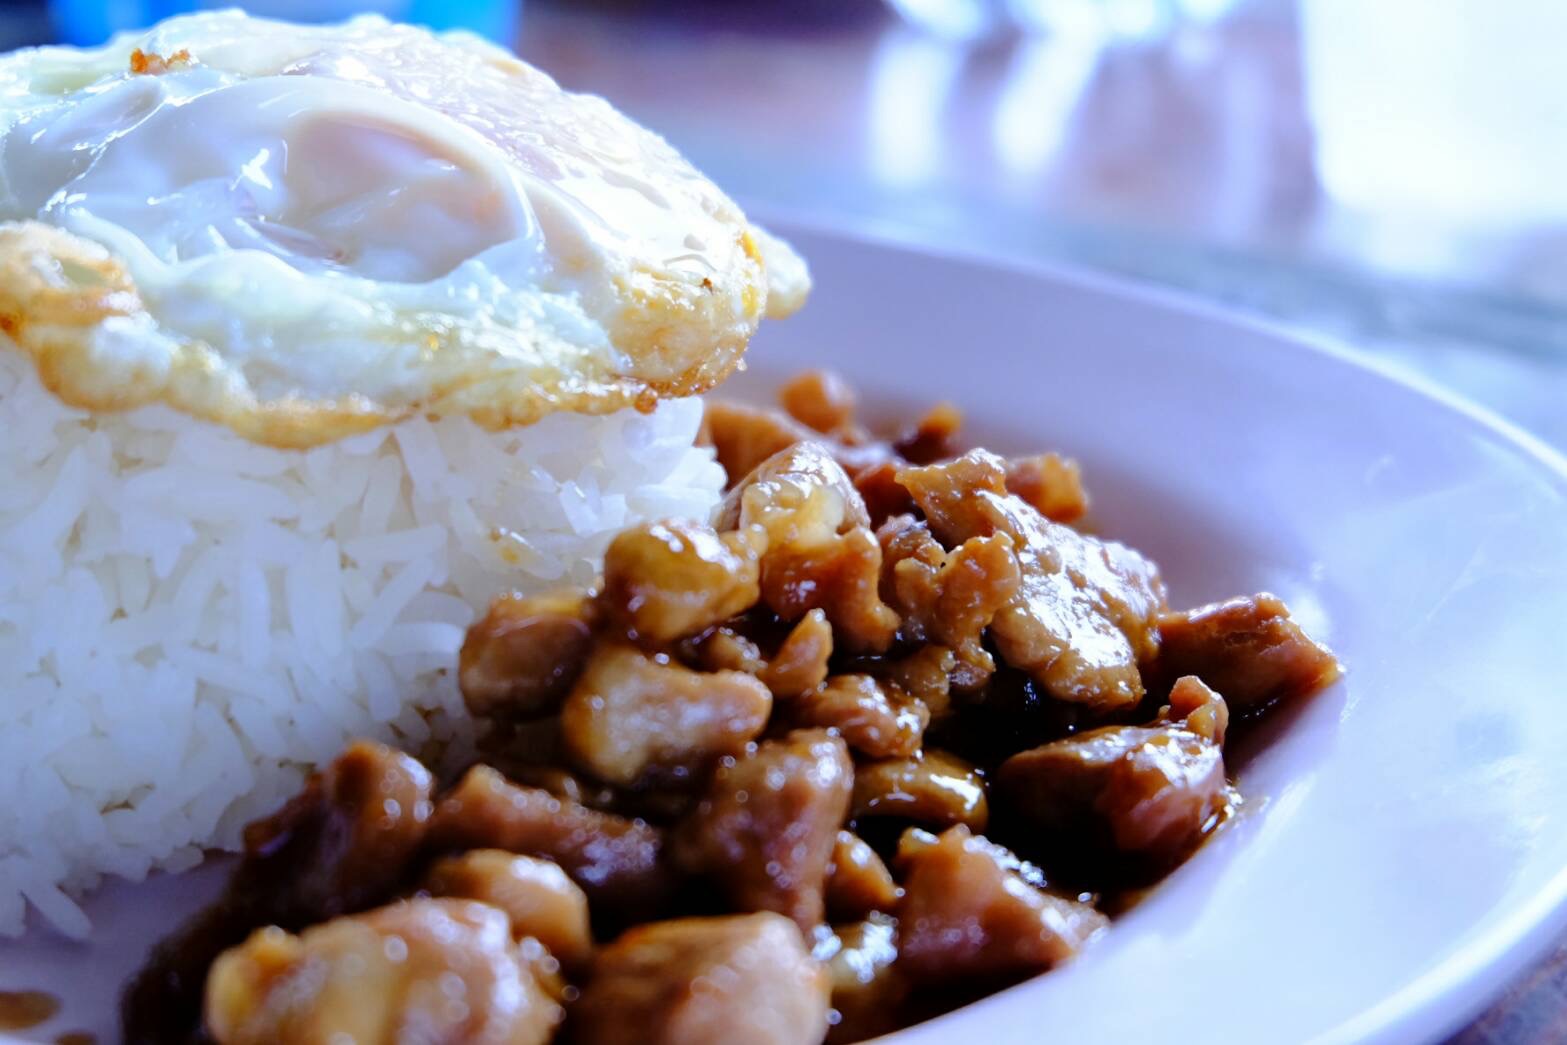 เดินจนถึงฝั่งไทยครับ แวะทานมื้อเช้าหัวสะพานฝั่งไทย อาหารปกติครับมื้อเช้าหมูกระเทียม :umh: